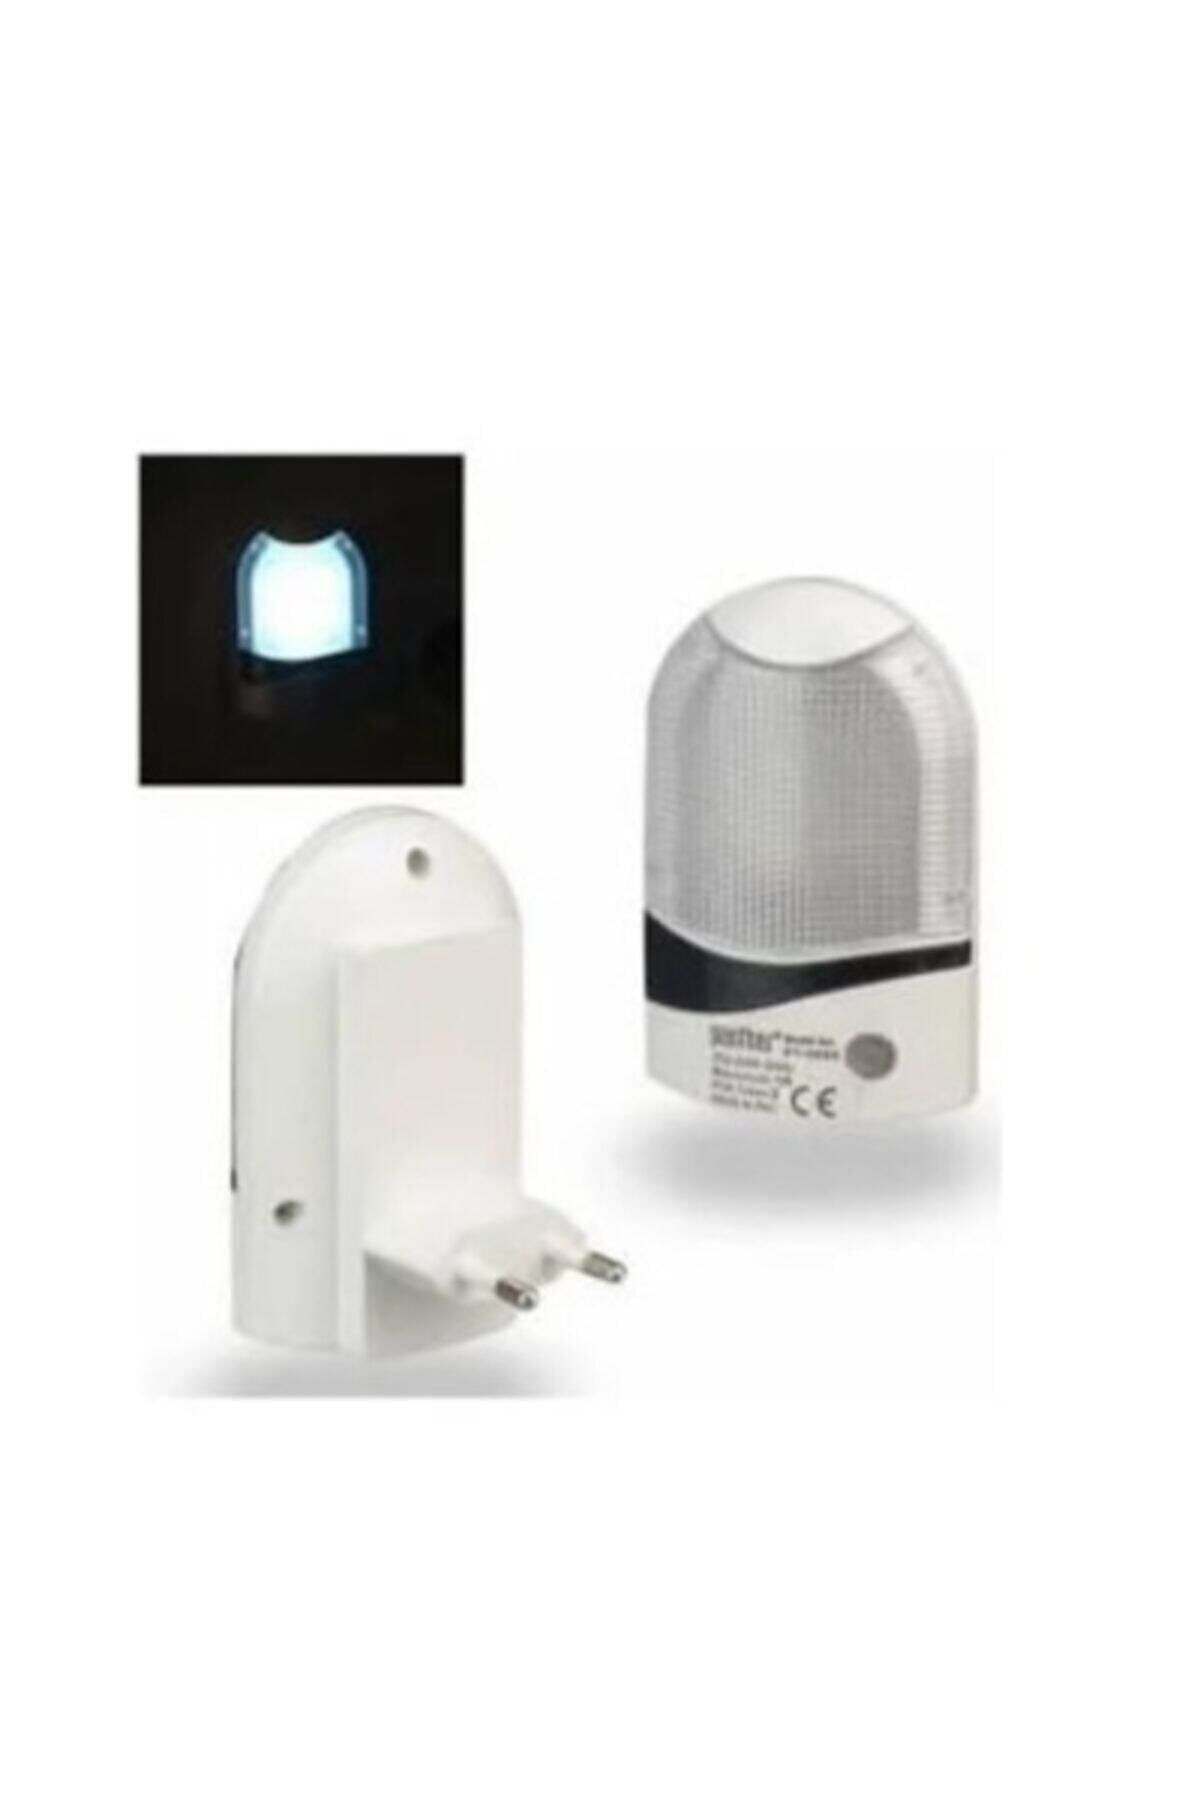 LEDON Fotoselli Sensörlü Gece Lambası